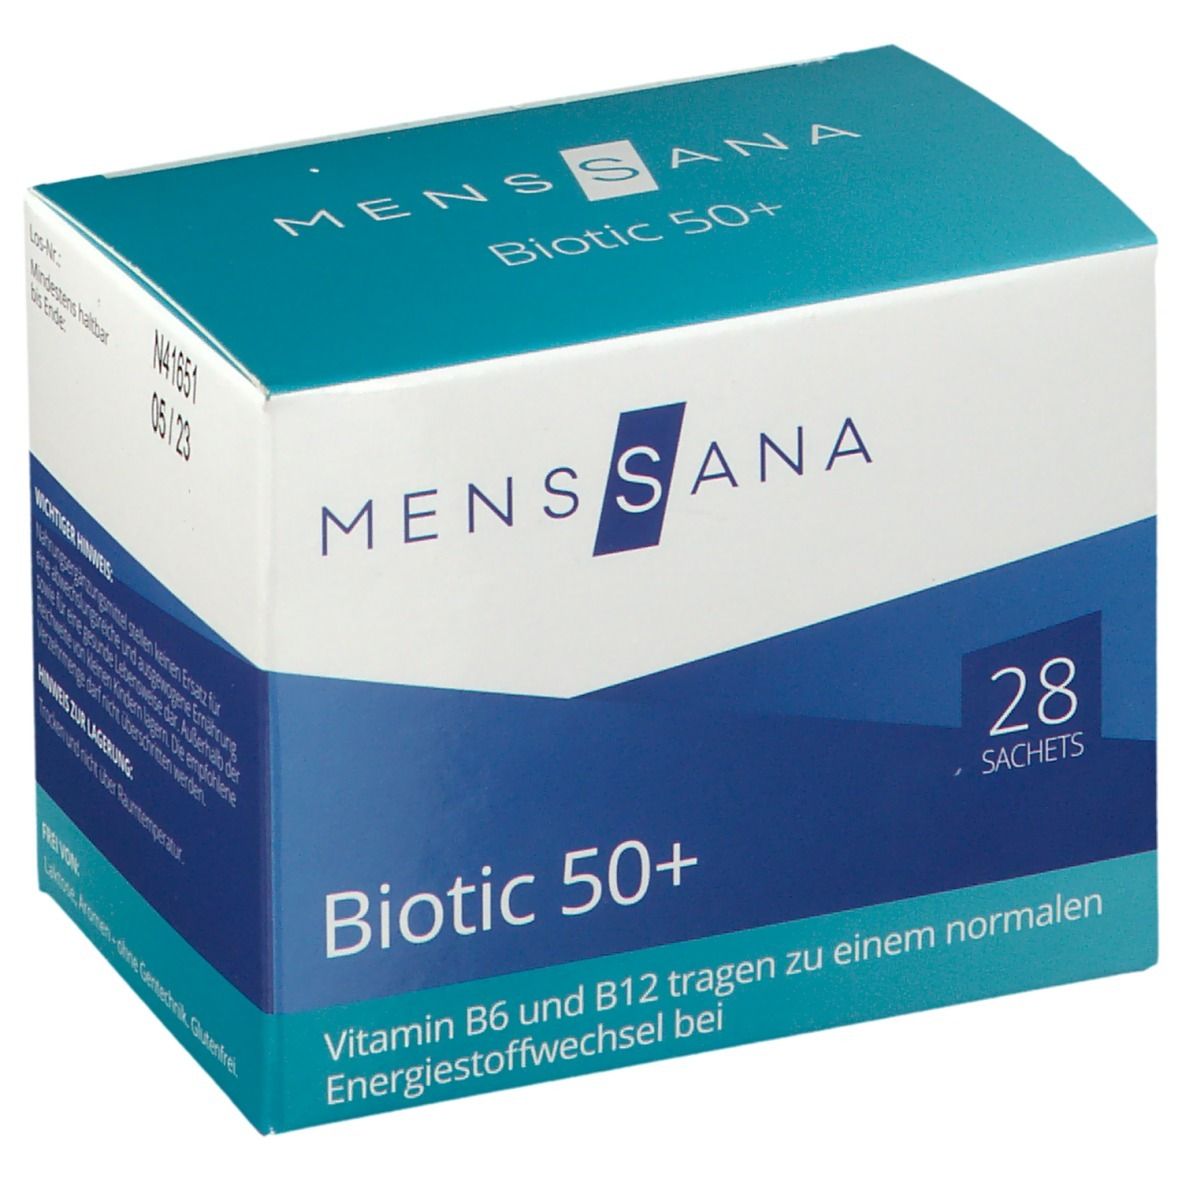 MENSSANA Biotic 50+